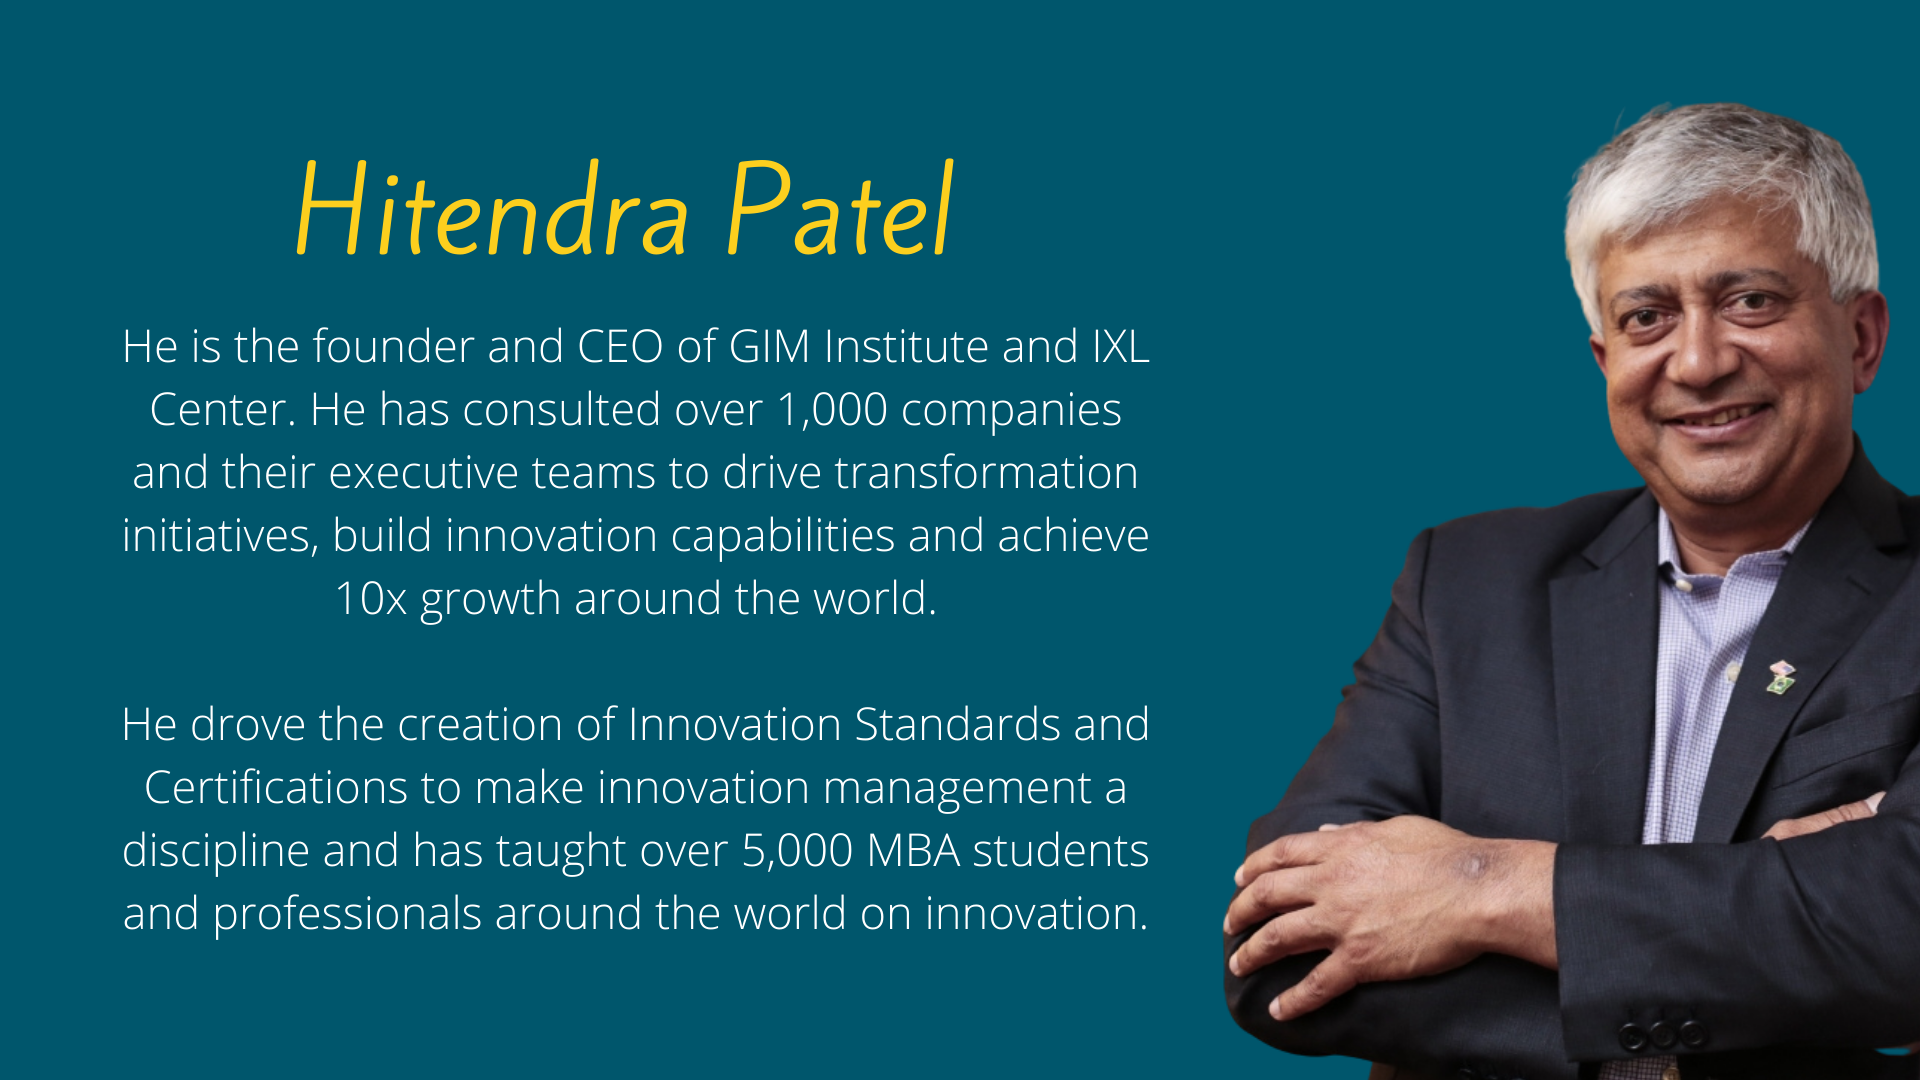 Dr. Hitendra Patel